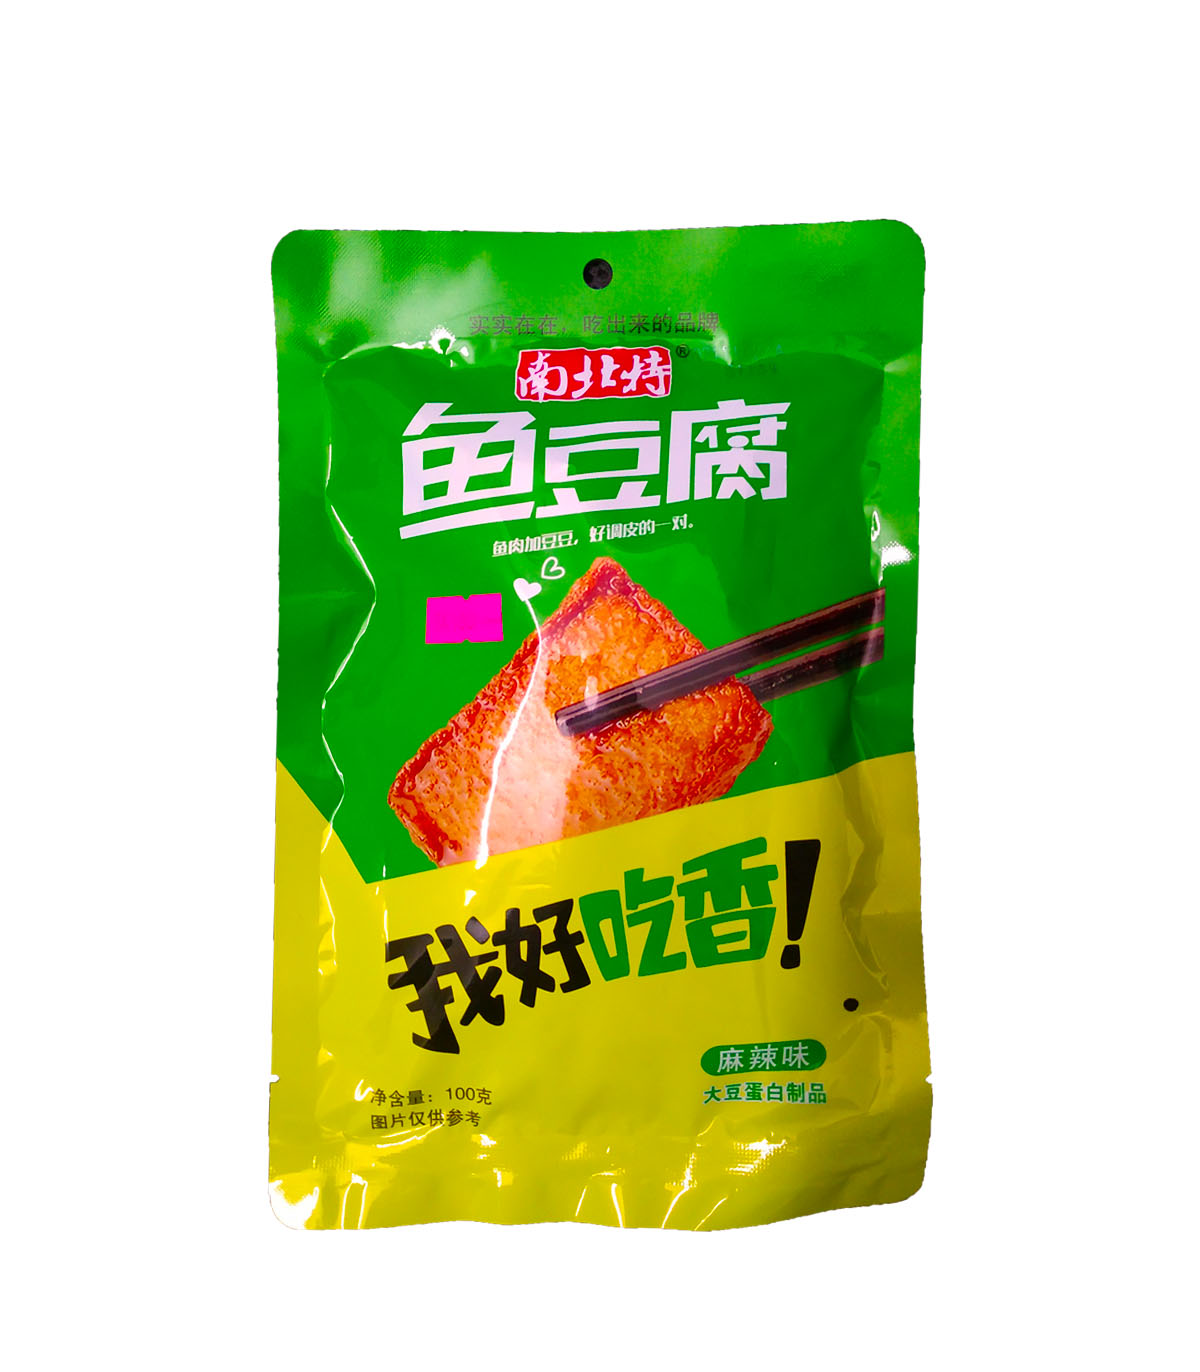 鱼豆腐Instant Tofu Can 100gm